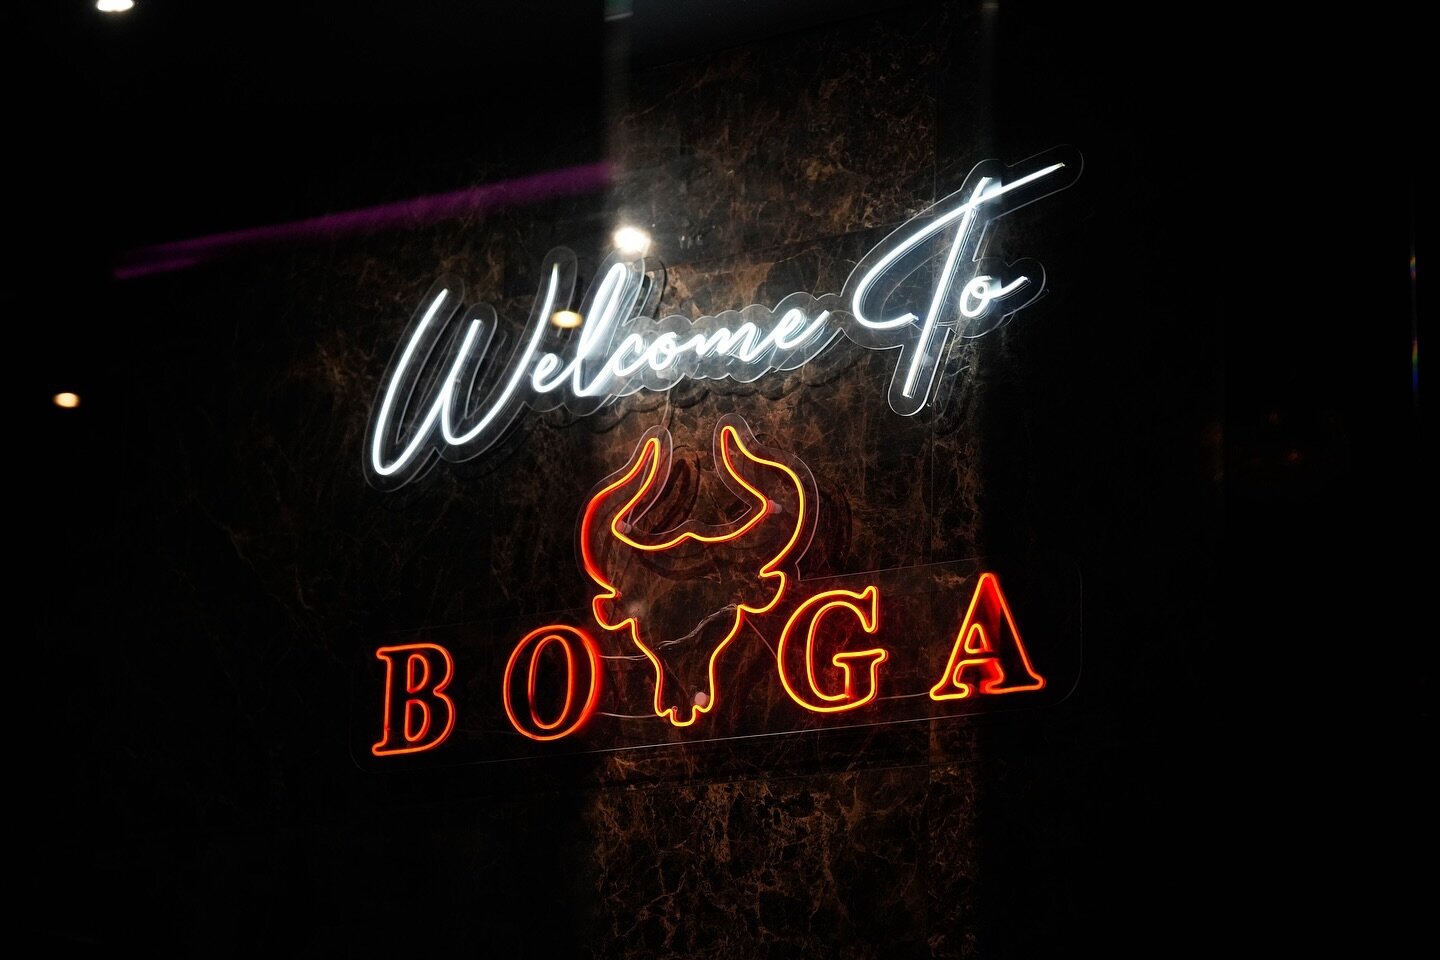 We Are Boga Steak &amp; Grill 😍

Join us this week at Boga, reserve your table directly via our website 🥂🍸

#boga #steak #steakhouse #london #restaurant #steakrestaurant #halal #cocktails #foodie #food #foodlover